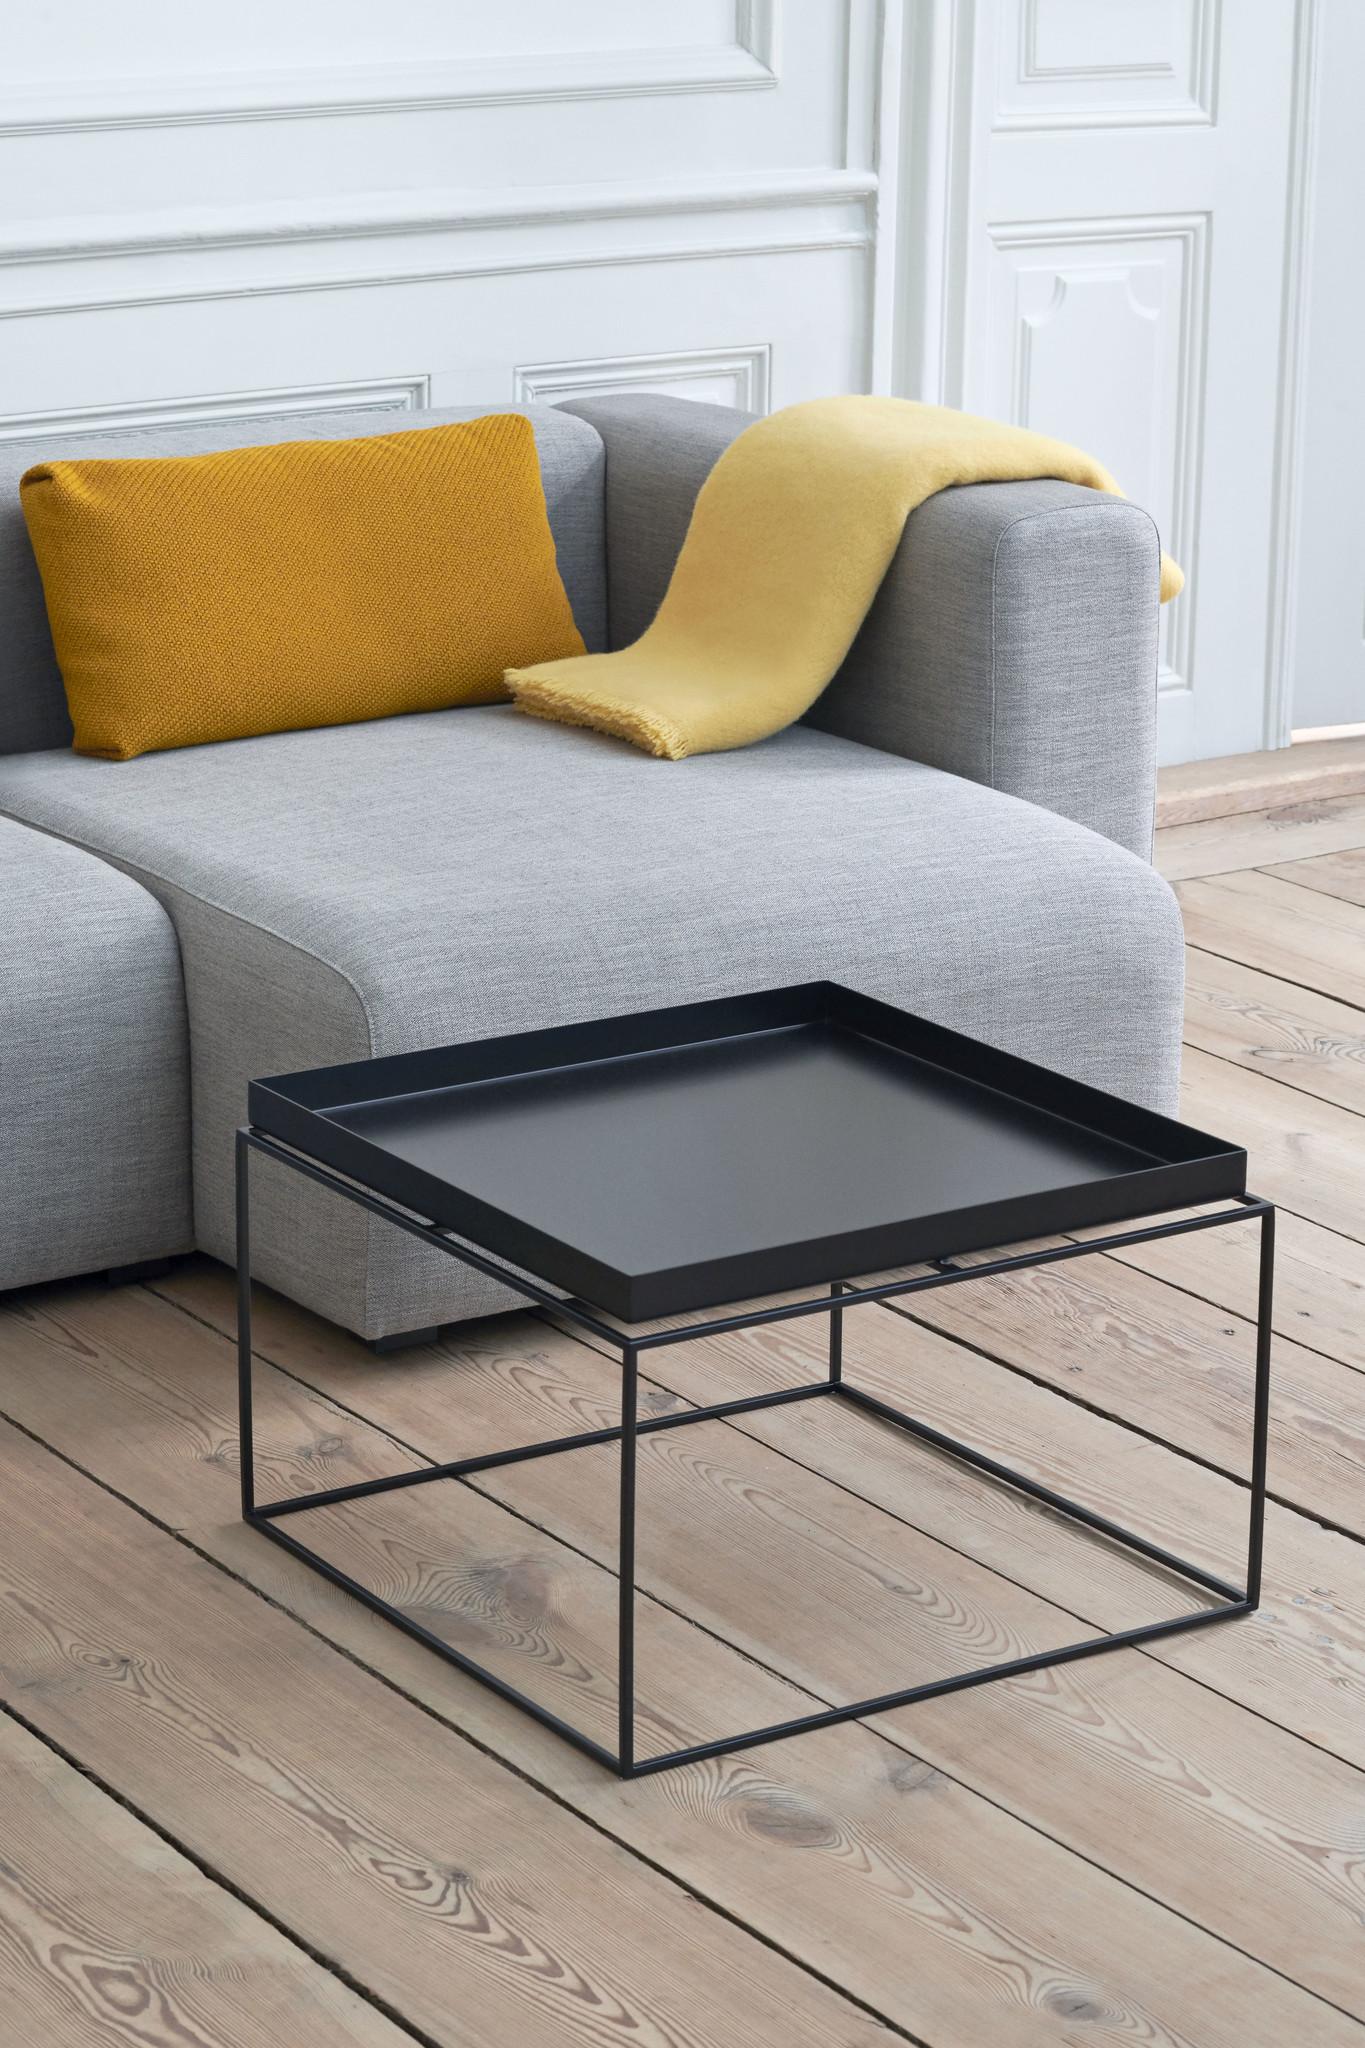 La table plateau en métal est un meuble multifonctionnel qui s'adapte facilement à vos besoins.
Lorsque le plateau est en place, il peut être utilisé comme table de chevet ou table basse, et lorsque le plateau est retiré, il devient un plateau